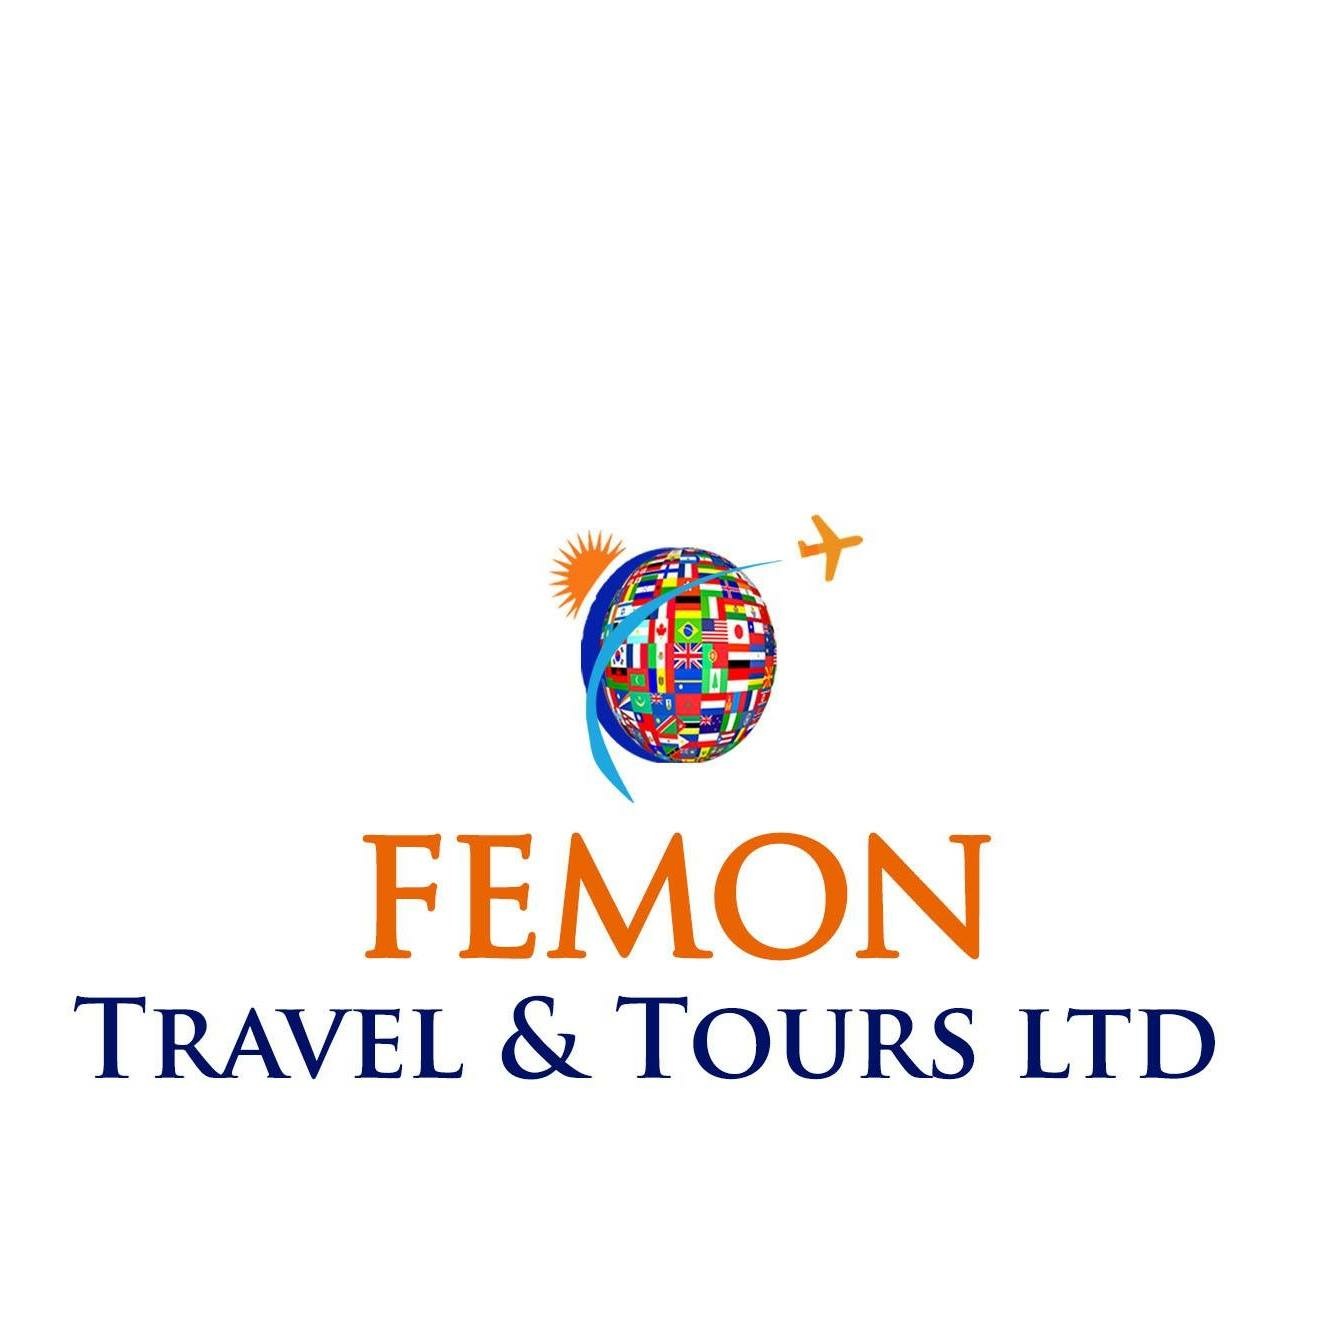 Femon Travel & Tours, Ltd | Better Business Bureau® Profile